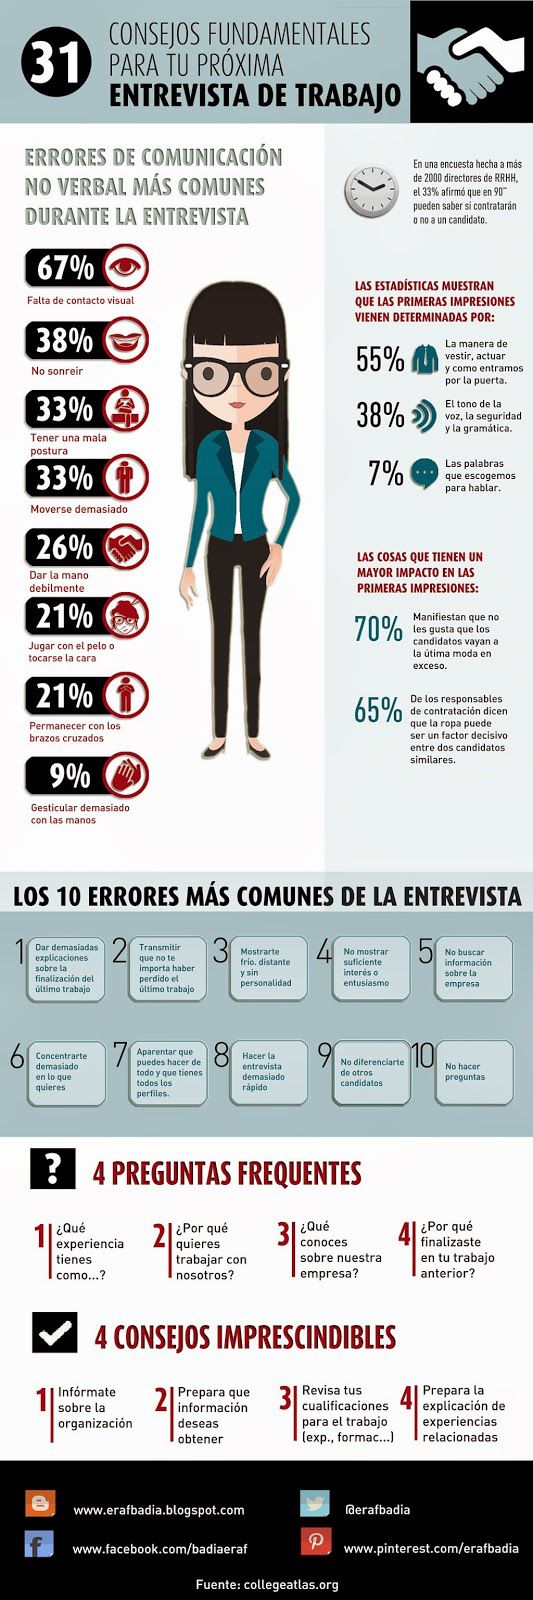 31 consejos fundamentales para una entrevista de trabajo #infografia #infographic #empleo